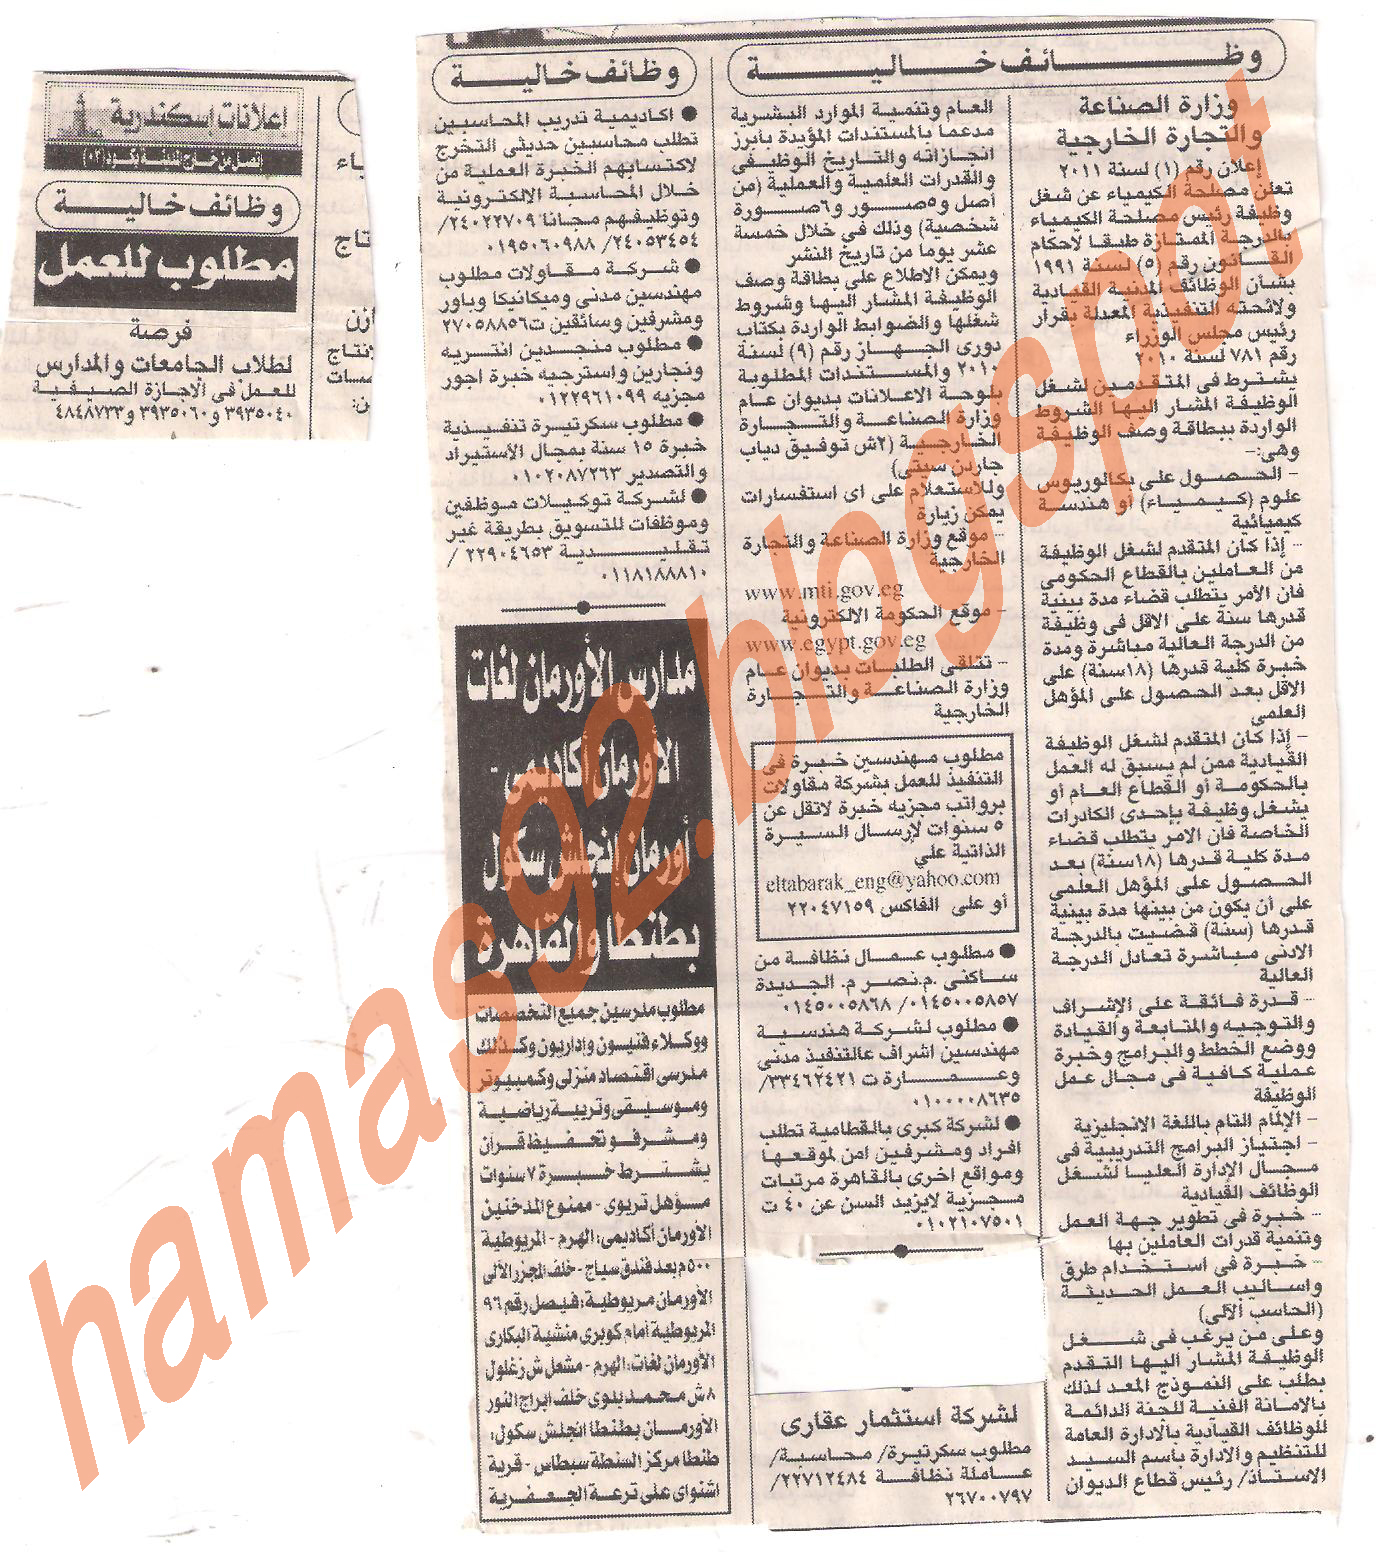 وظائف خالية من جريدة الاهرام الاحد 10 يوليو 2011 Picture+003